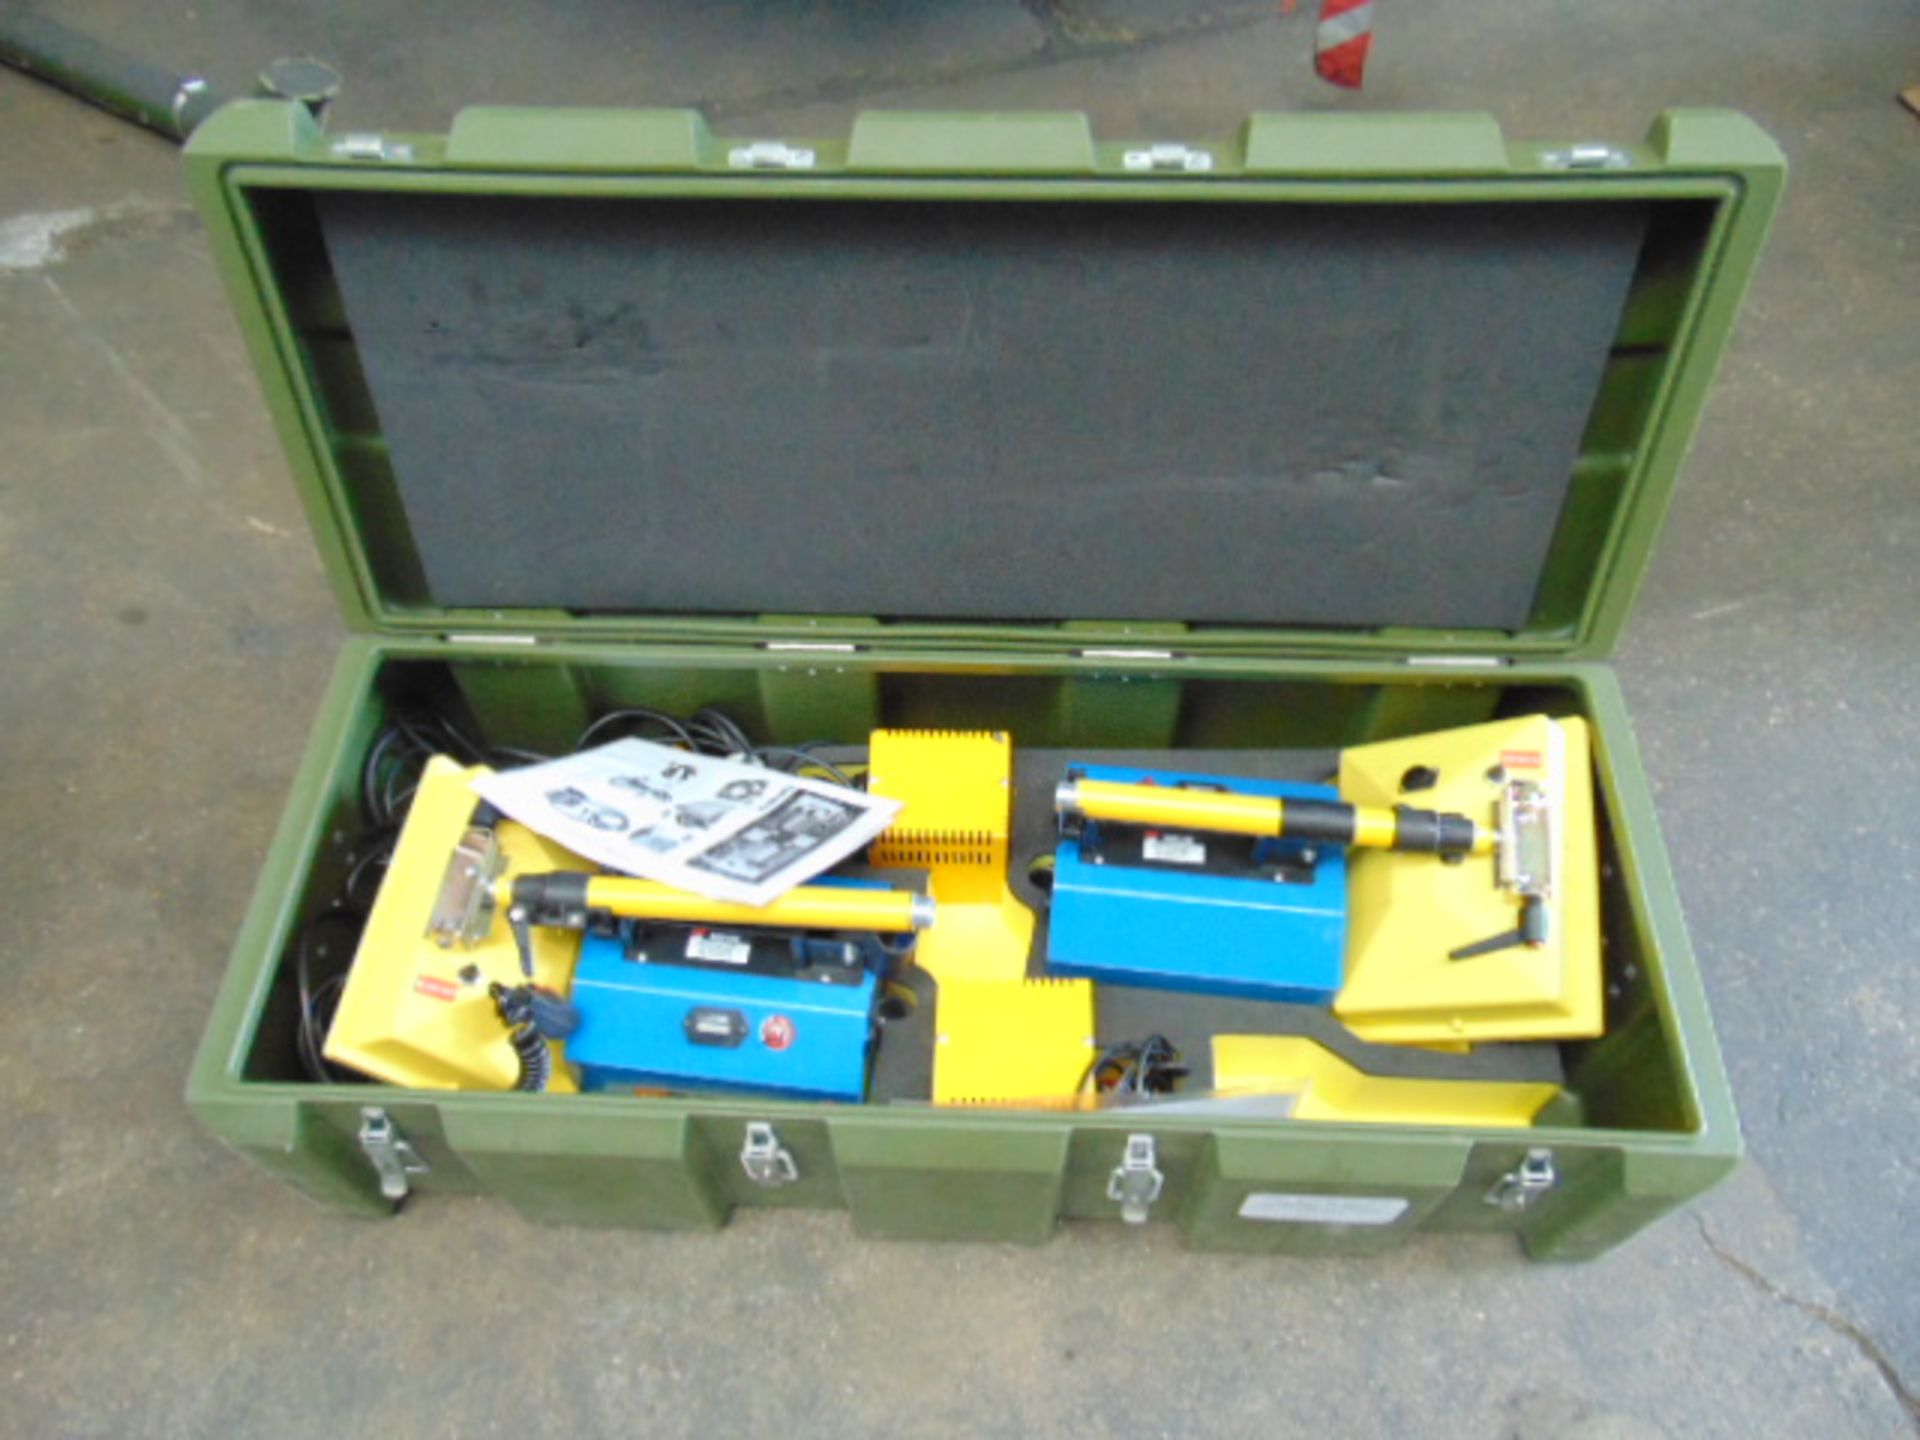 Supalite K9 Twin Portable Lighting Unit Kit in Transit Case - Image 2 of 7